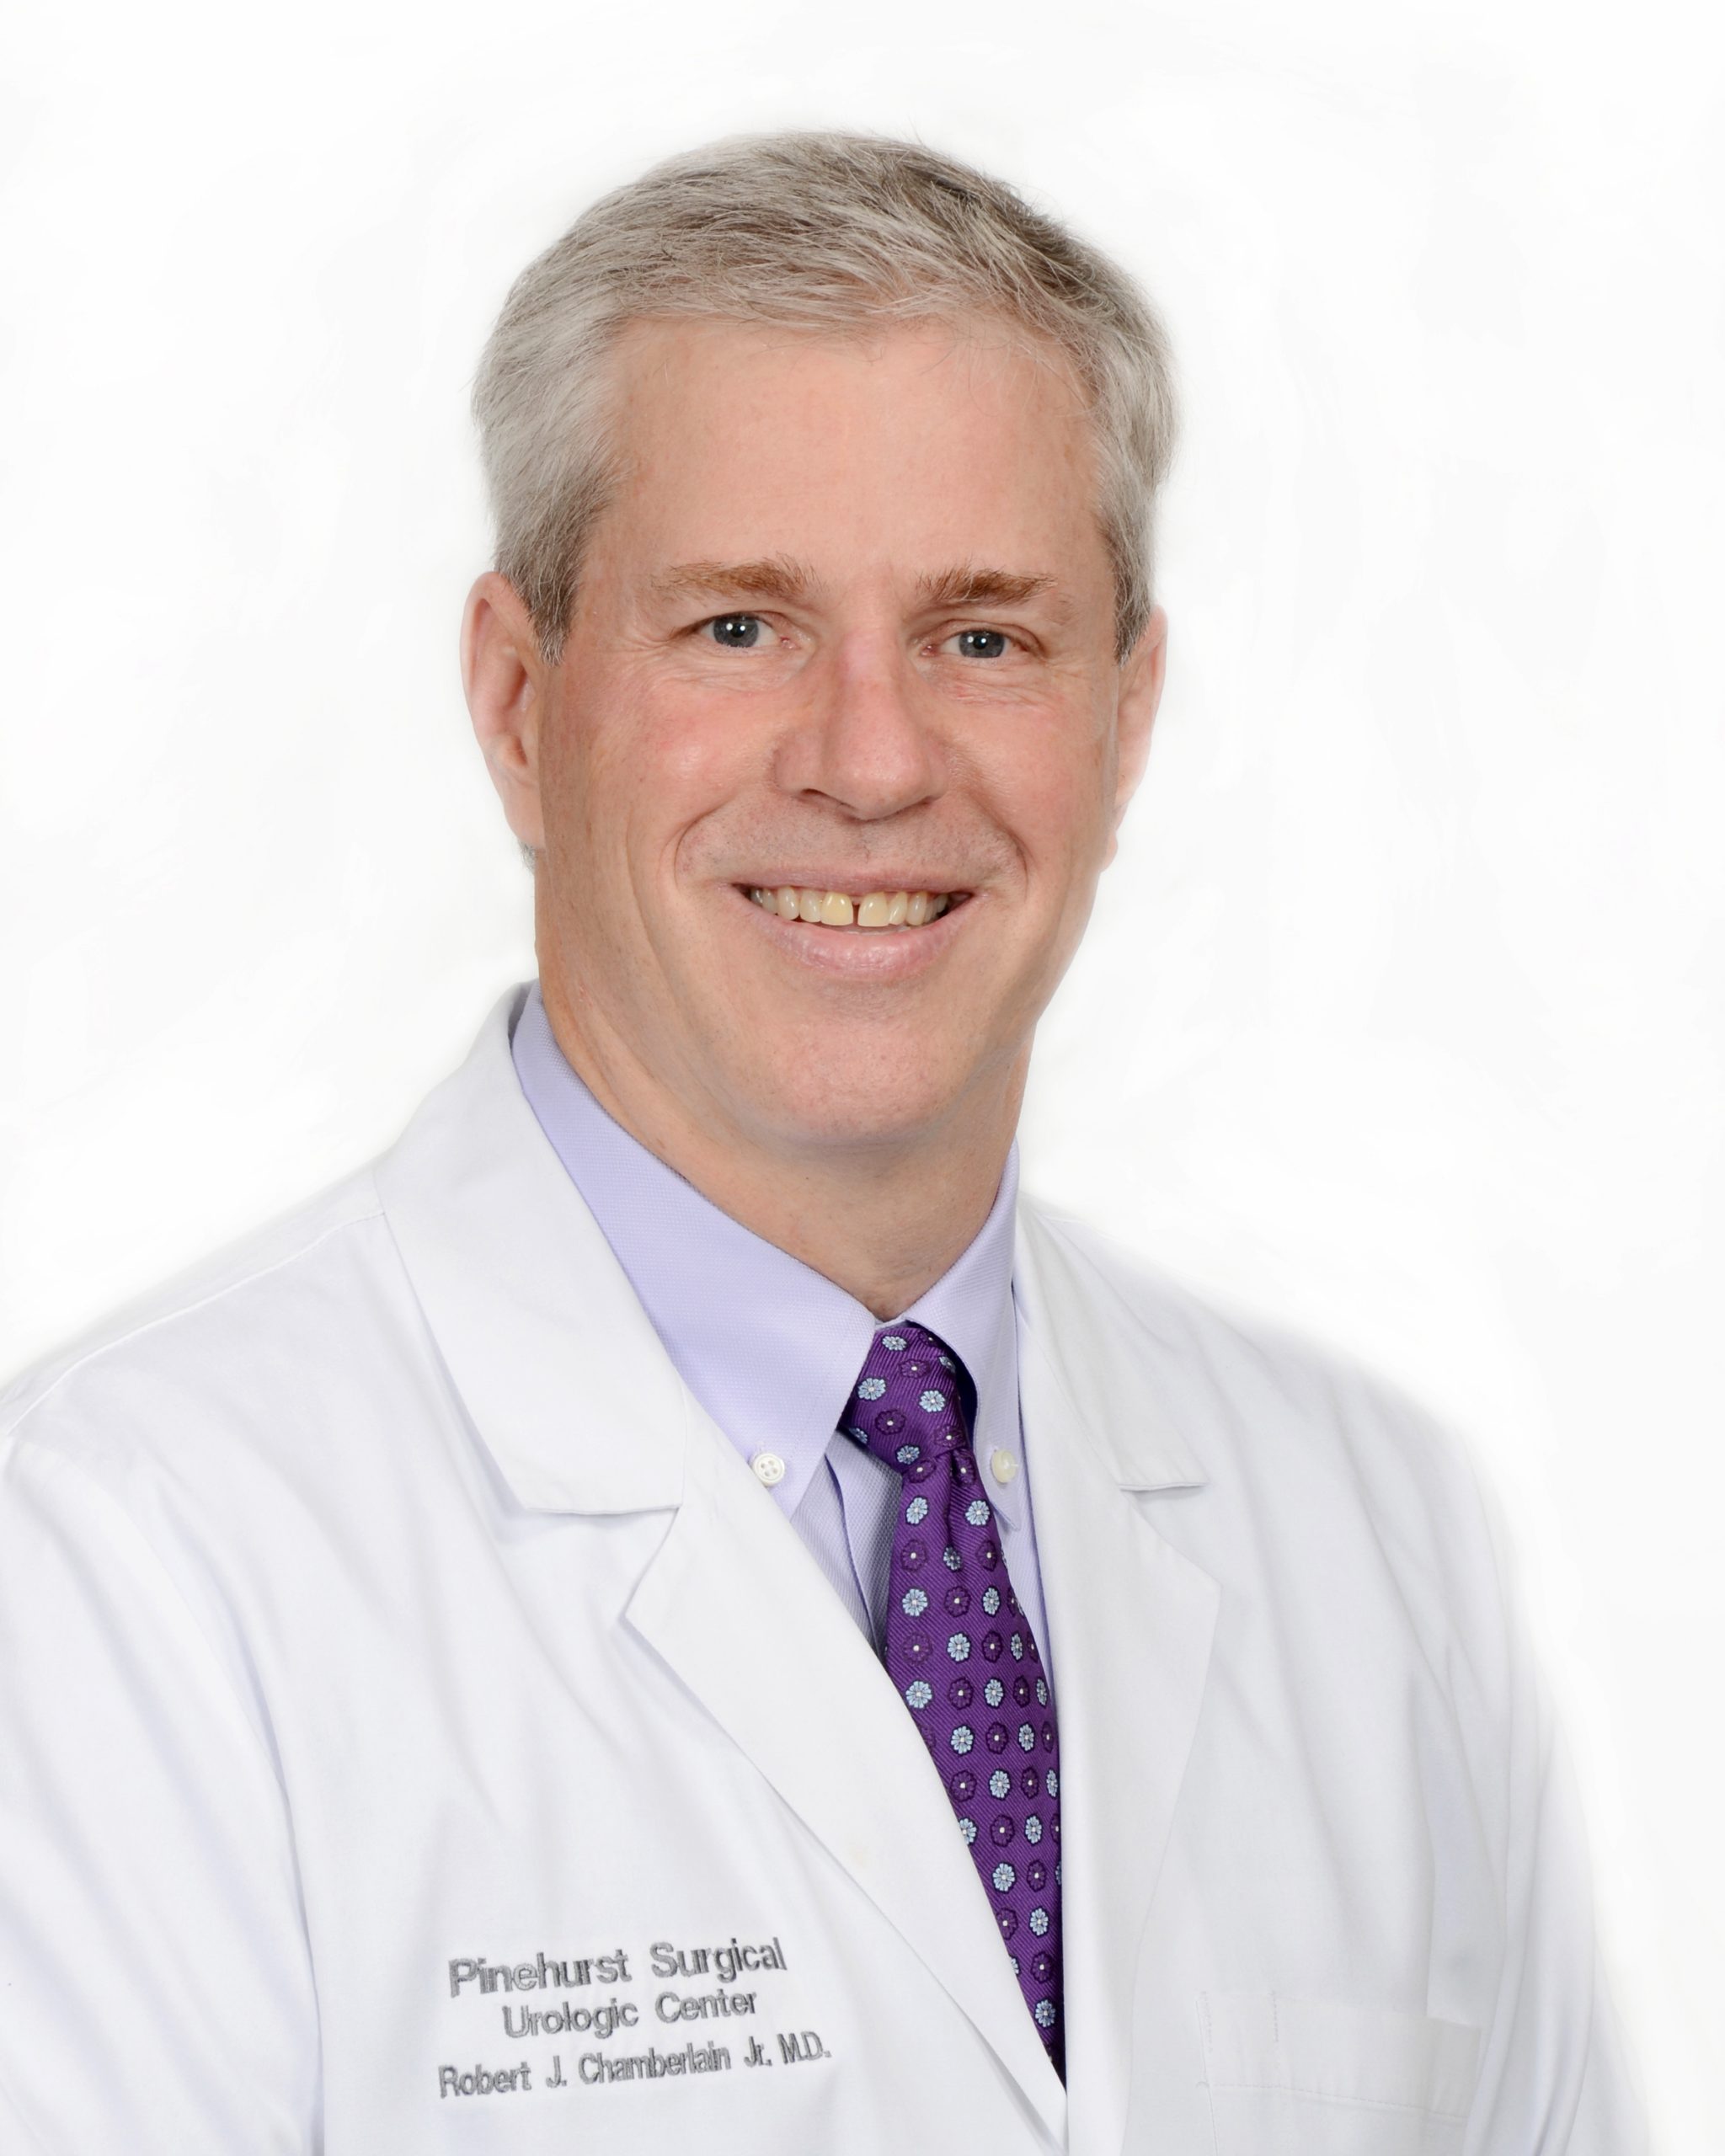 Robert Chamberlain Urologic Surgery